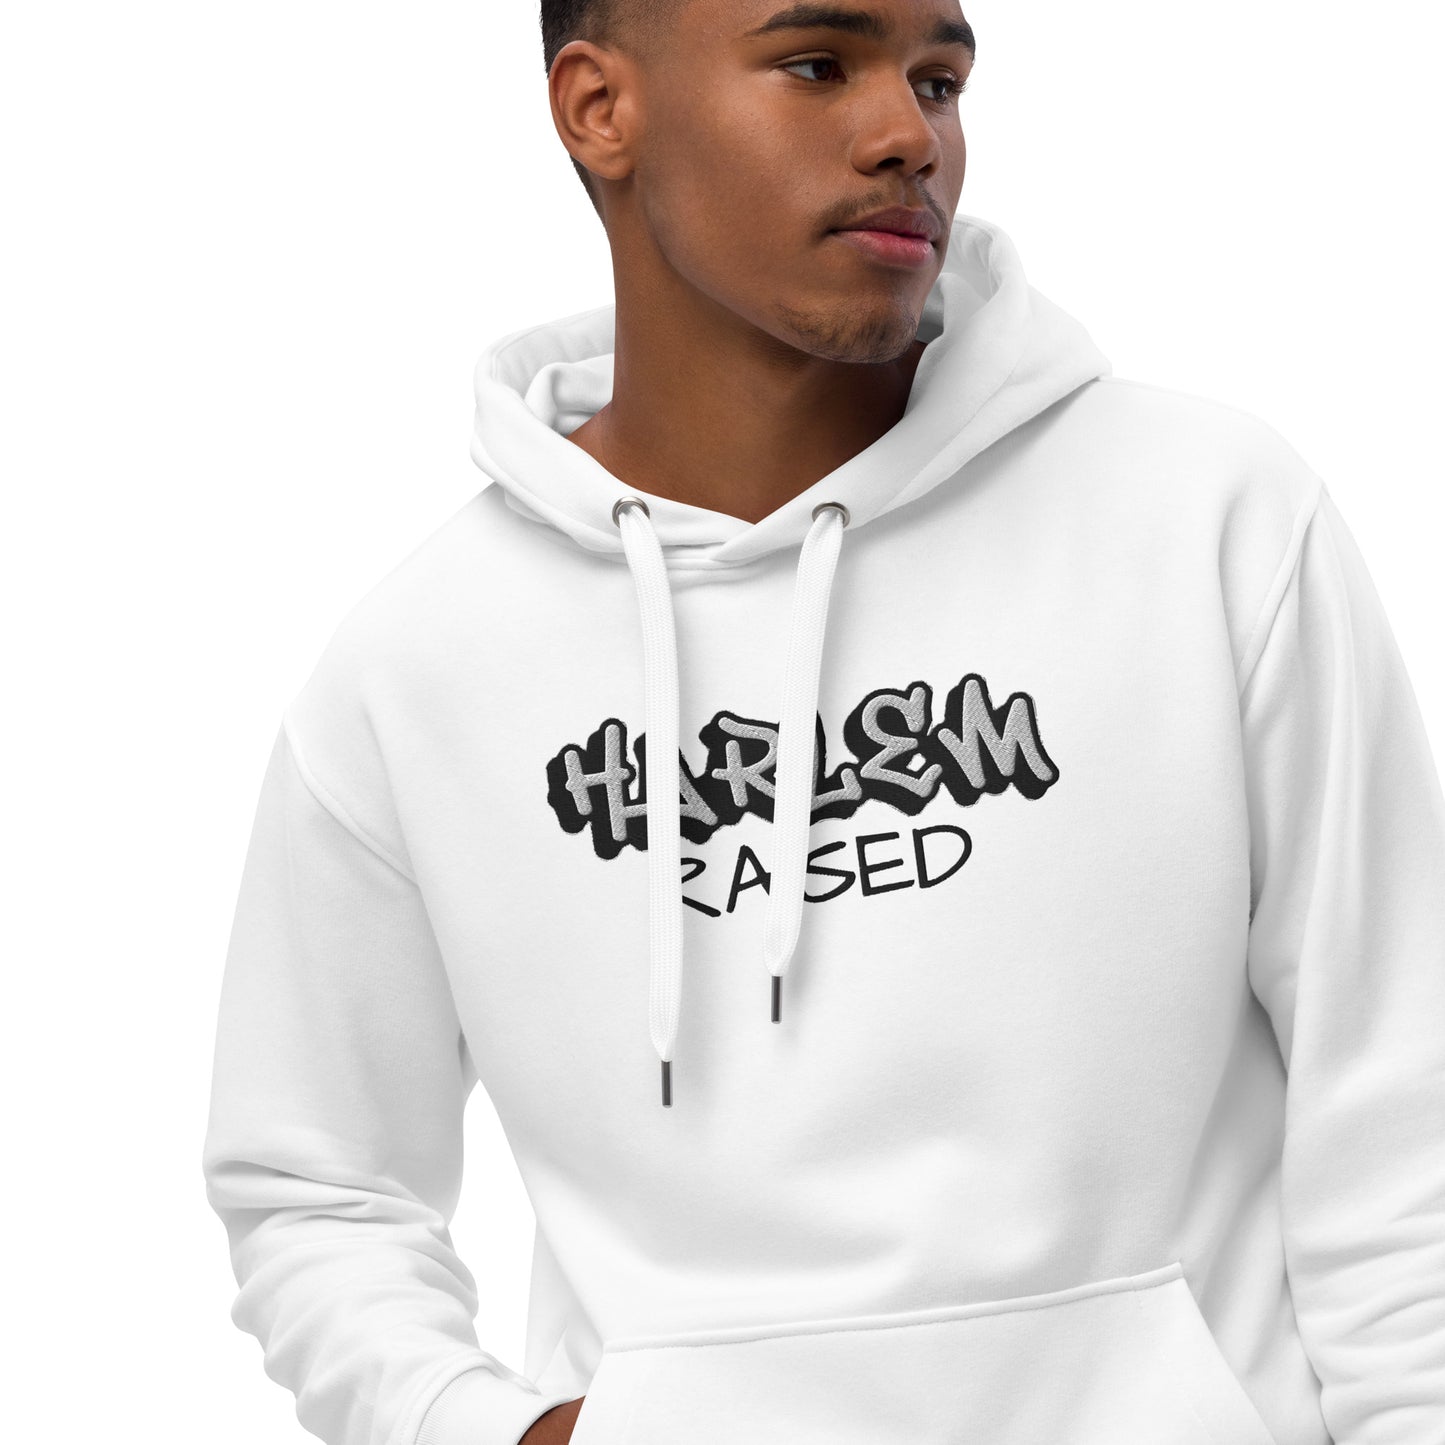 Jazrae all white Stitched Harlem Raised Premium eco hoodie